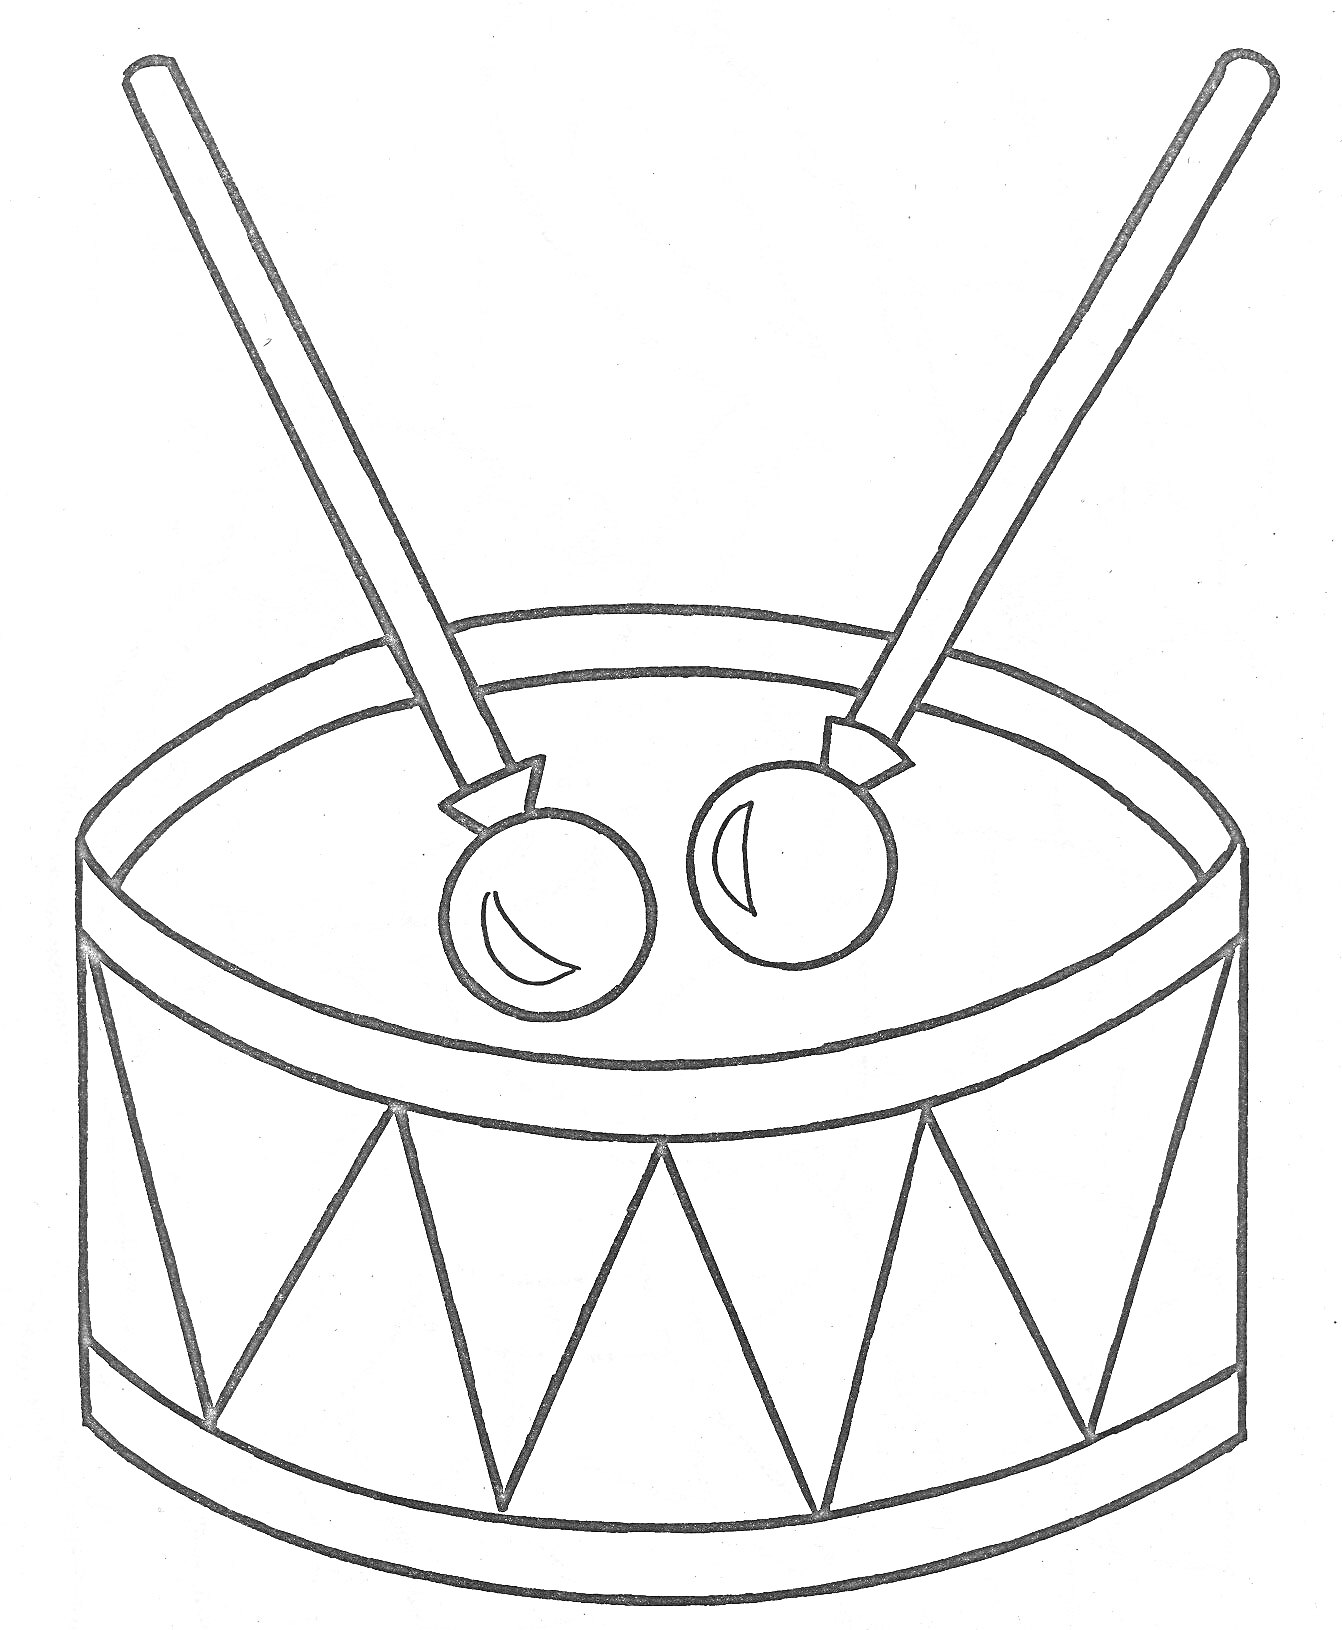 Барабан с палочками (две барабанные палочки на барабане с треугольным узором)